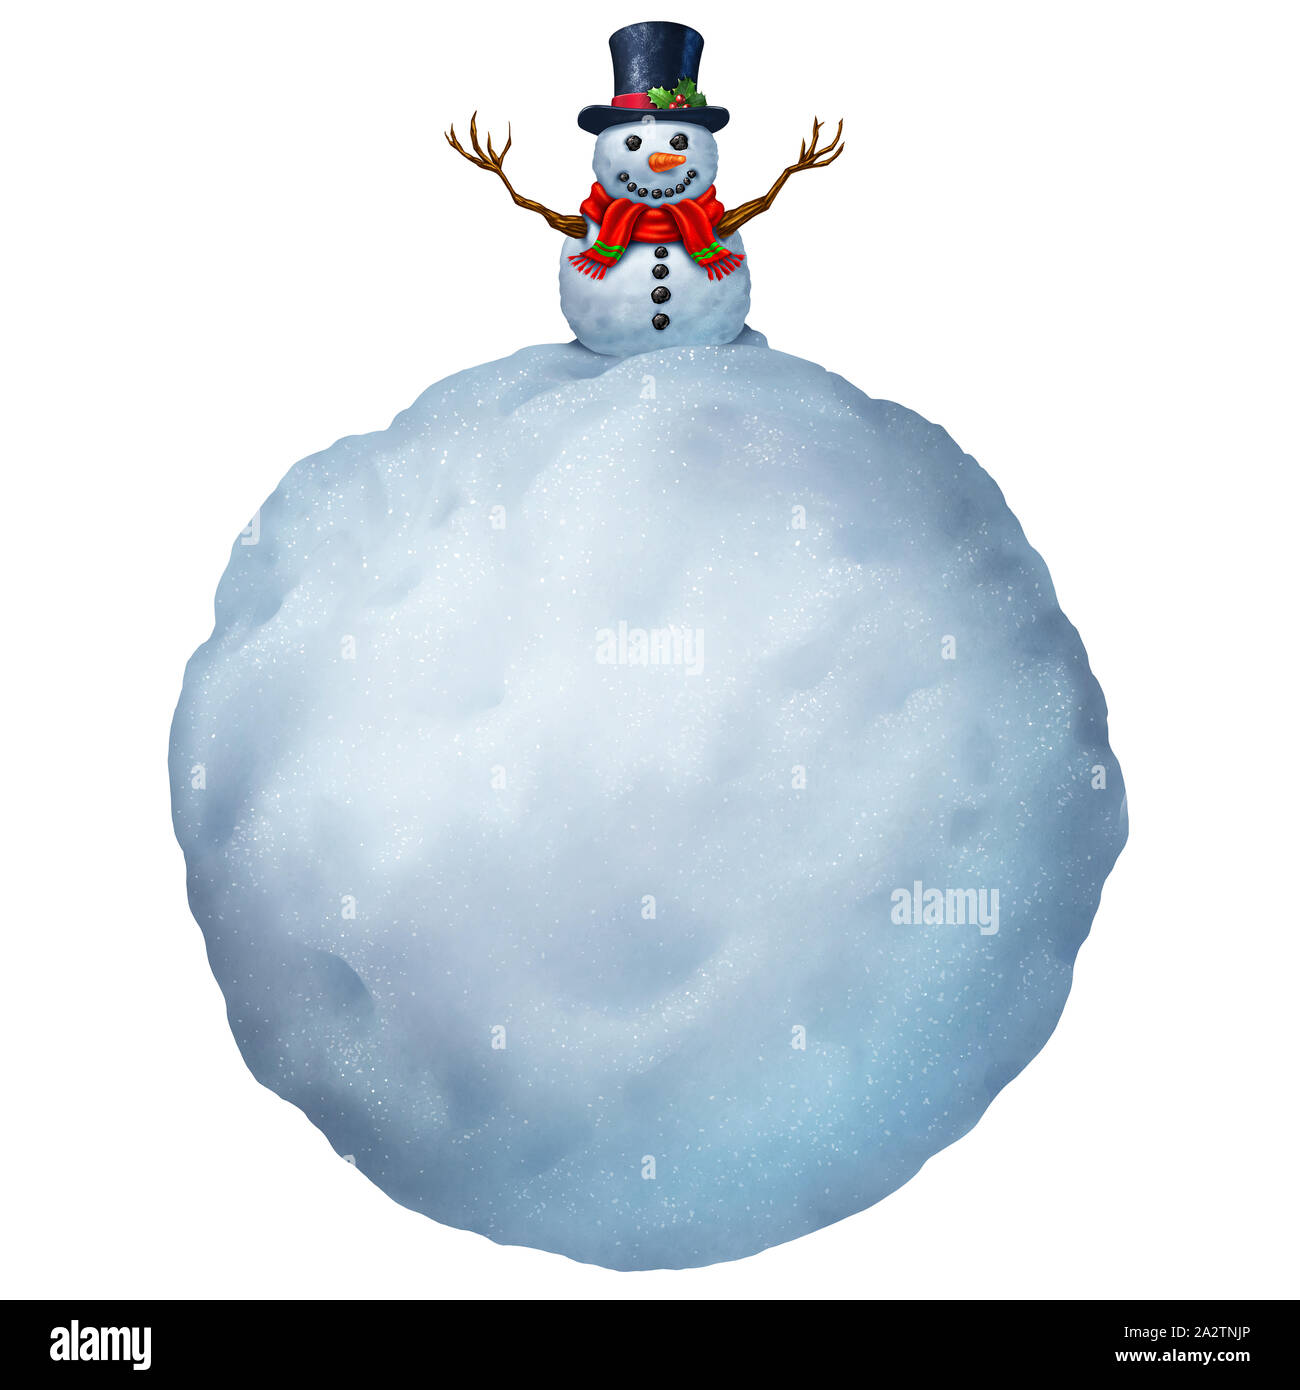 Snowman con área de texto aislado sobre un fondo blanco como una tarjeta de Navidad saludo o mensaje de vacaciones de invierno. Foto de stock